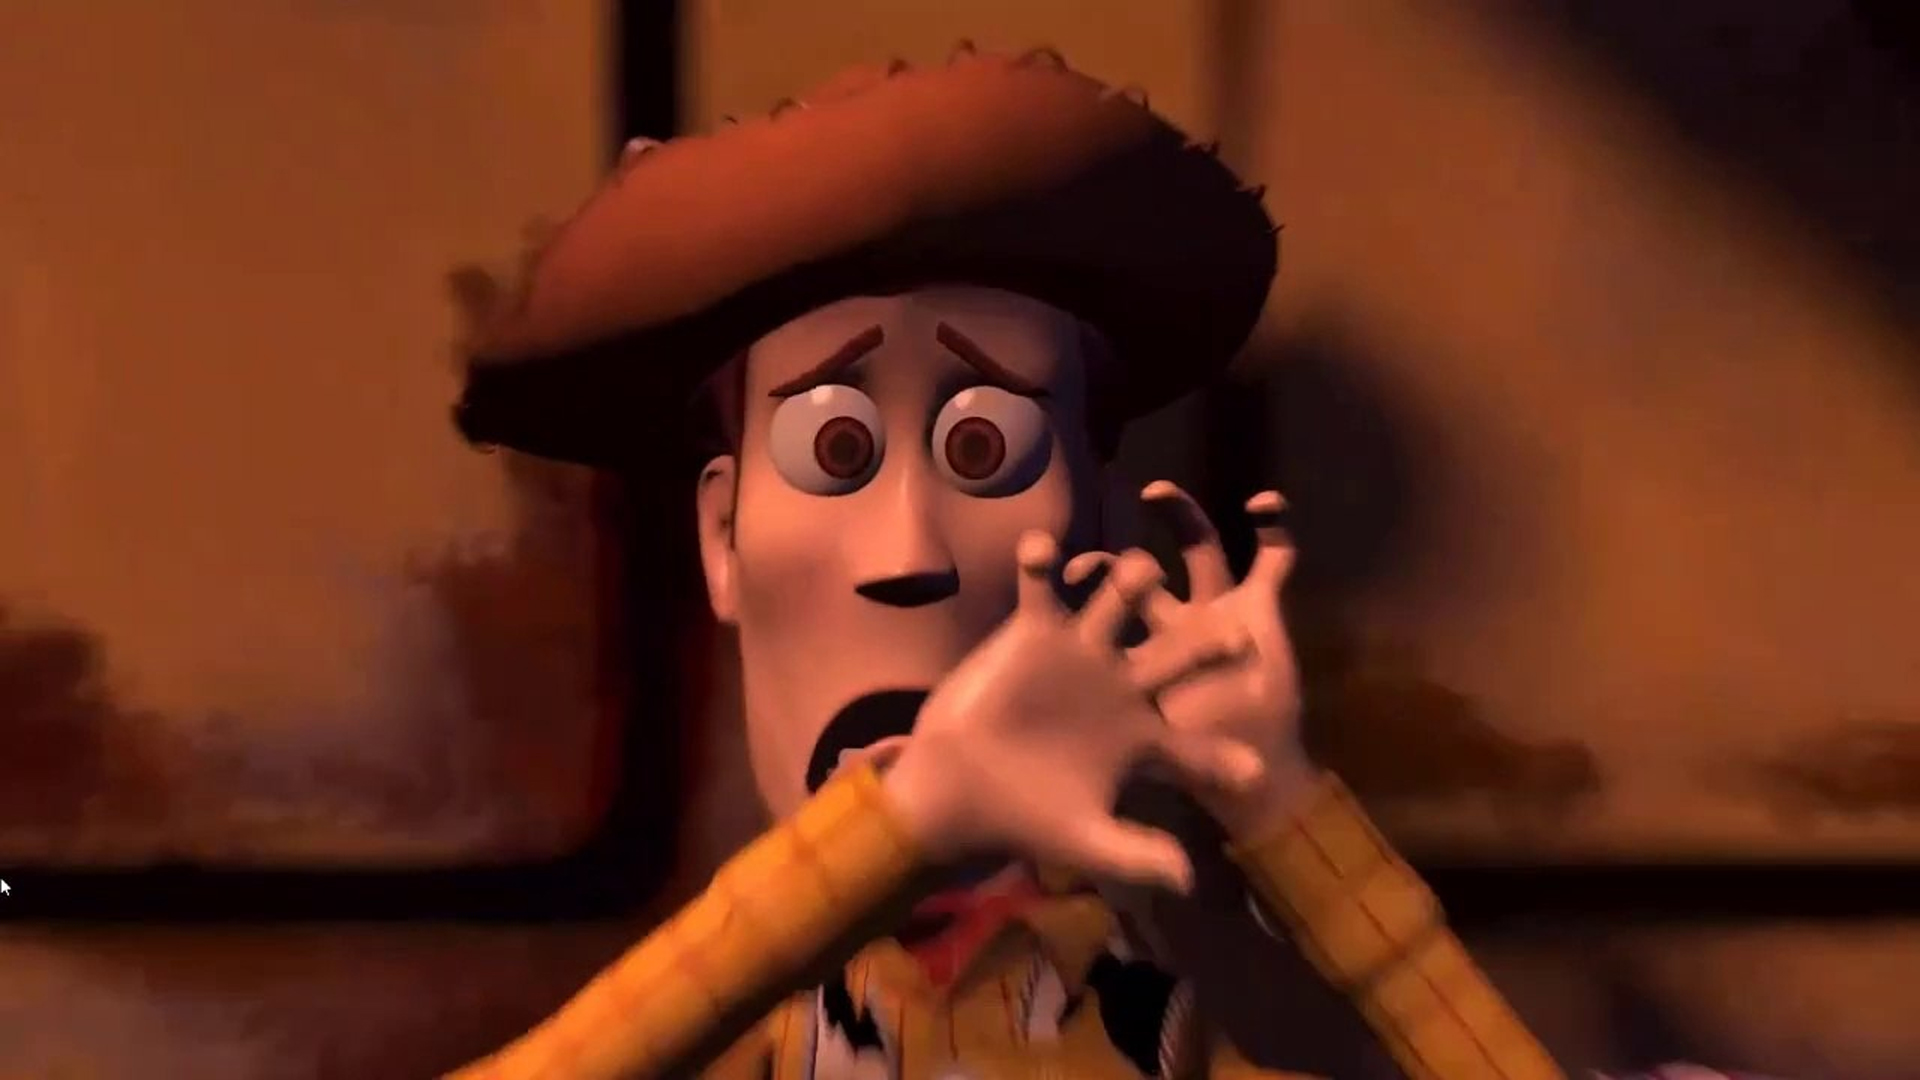 Pixar, Woody asustado